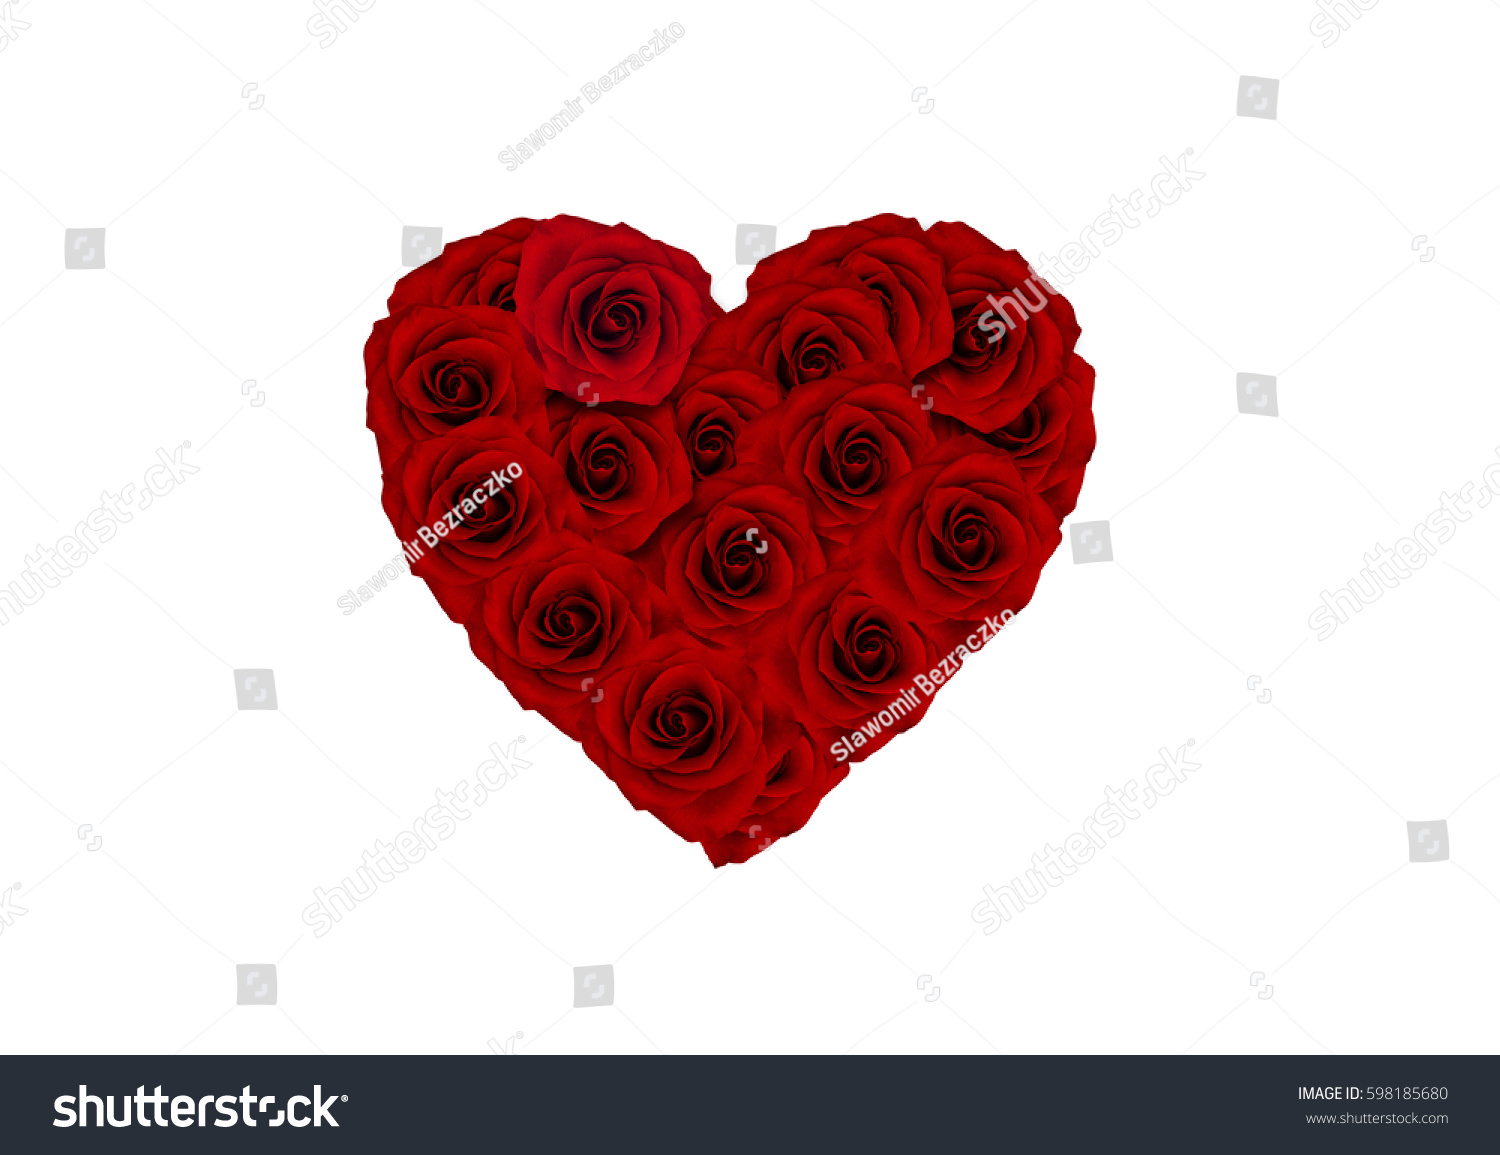 heart, rose heart, love, gift         #598185680